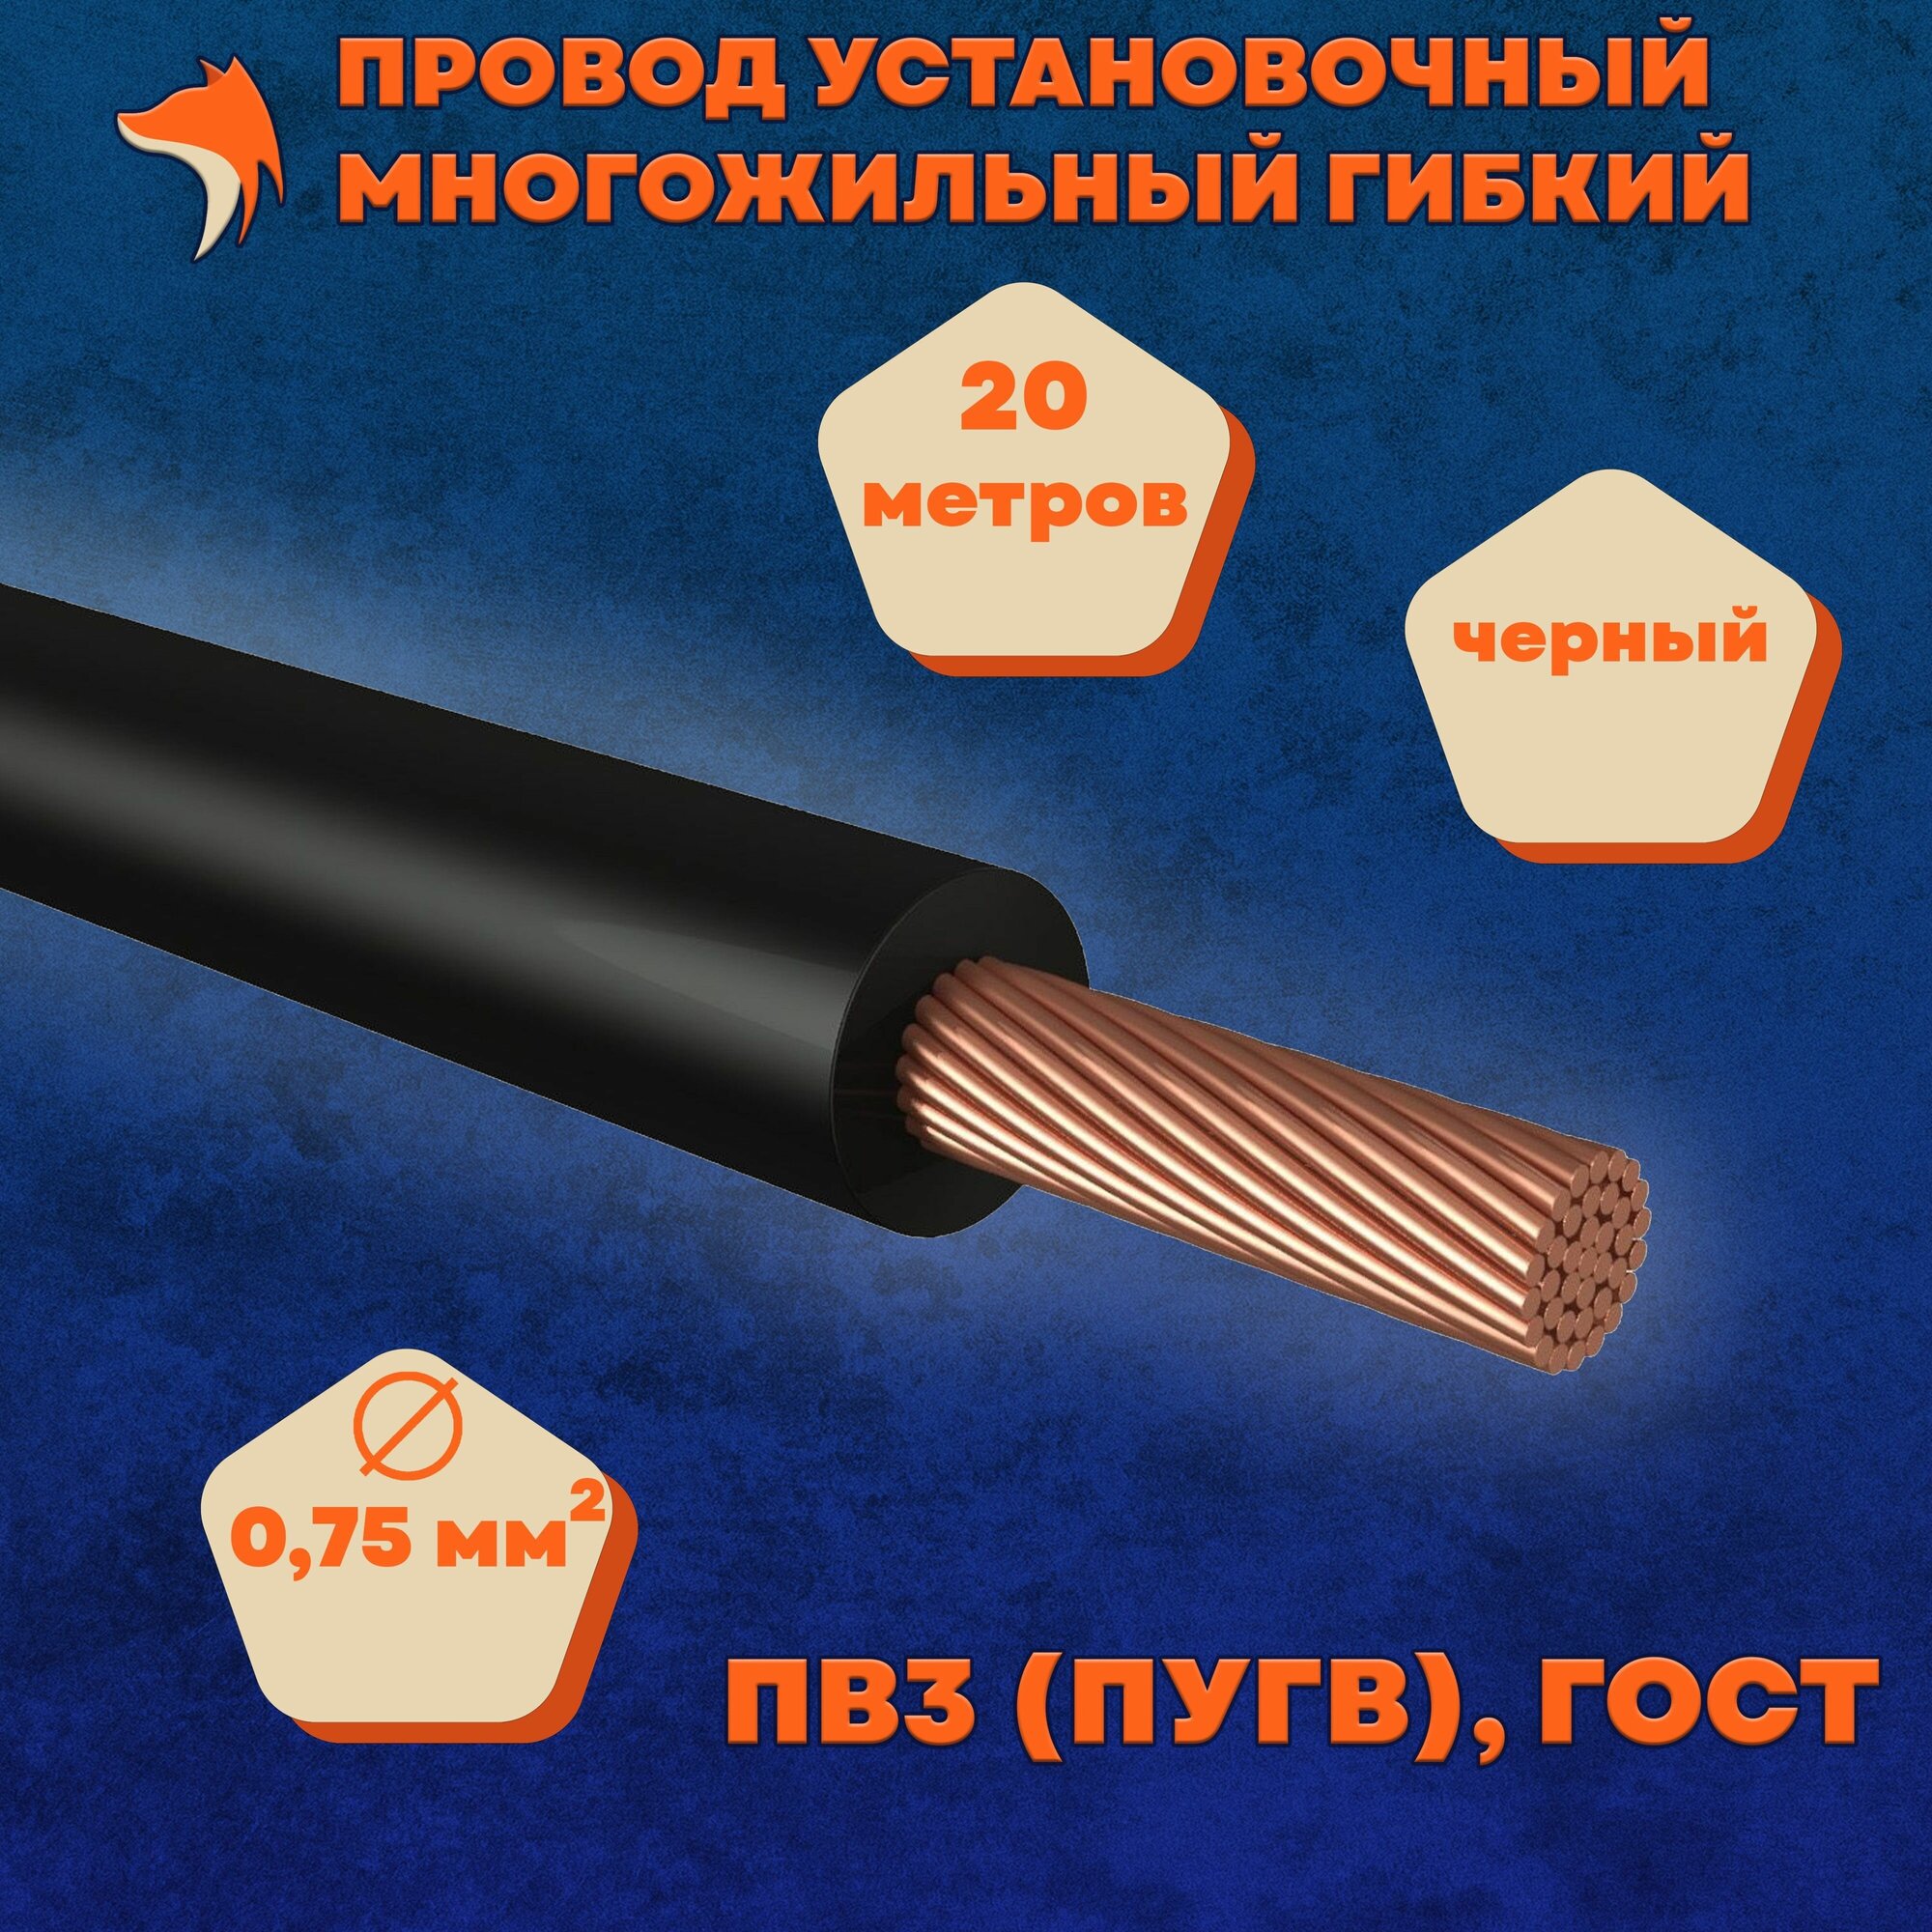 Провод установочный многожильный гибкий ПВ3 (ПуГВ) 0.75 мм , черный, 20 метров - фотография № 1